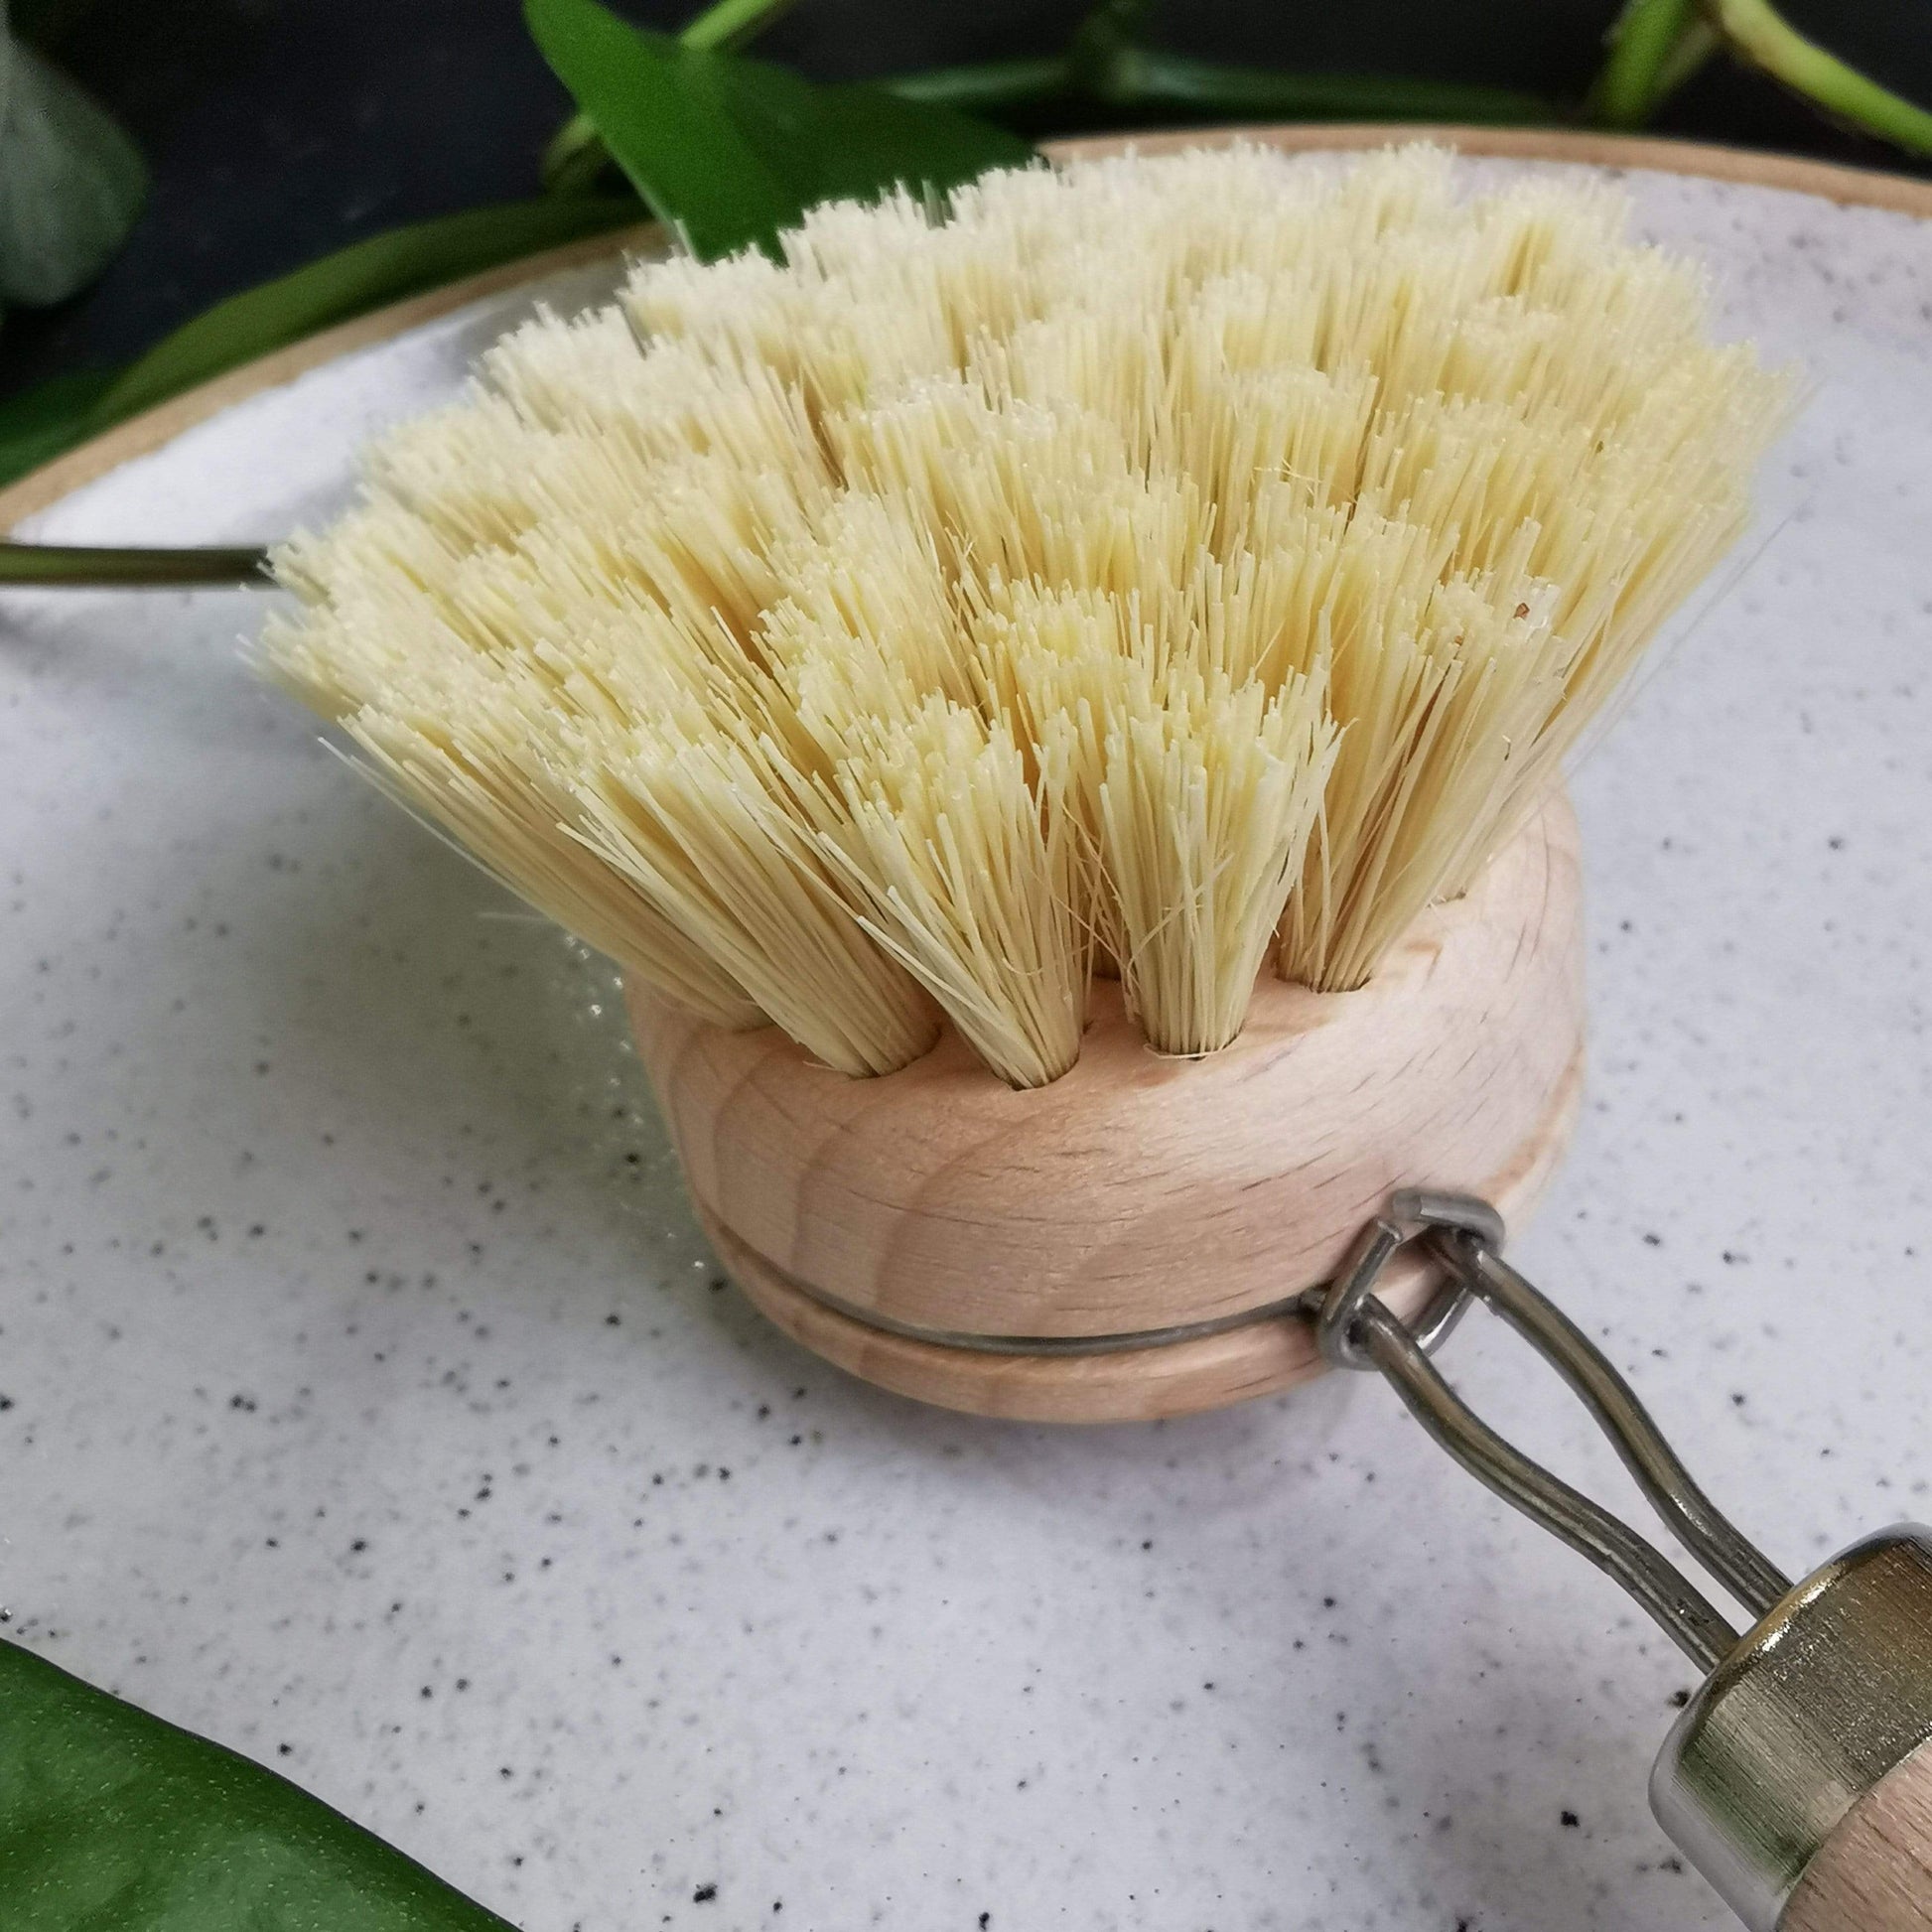 PRIOR SHOP Eco Brush Eco Dish Brushes